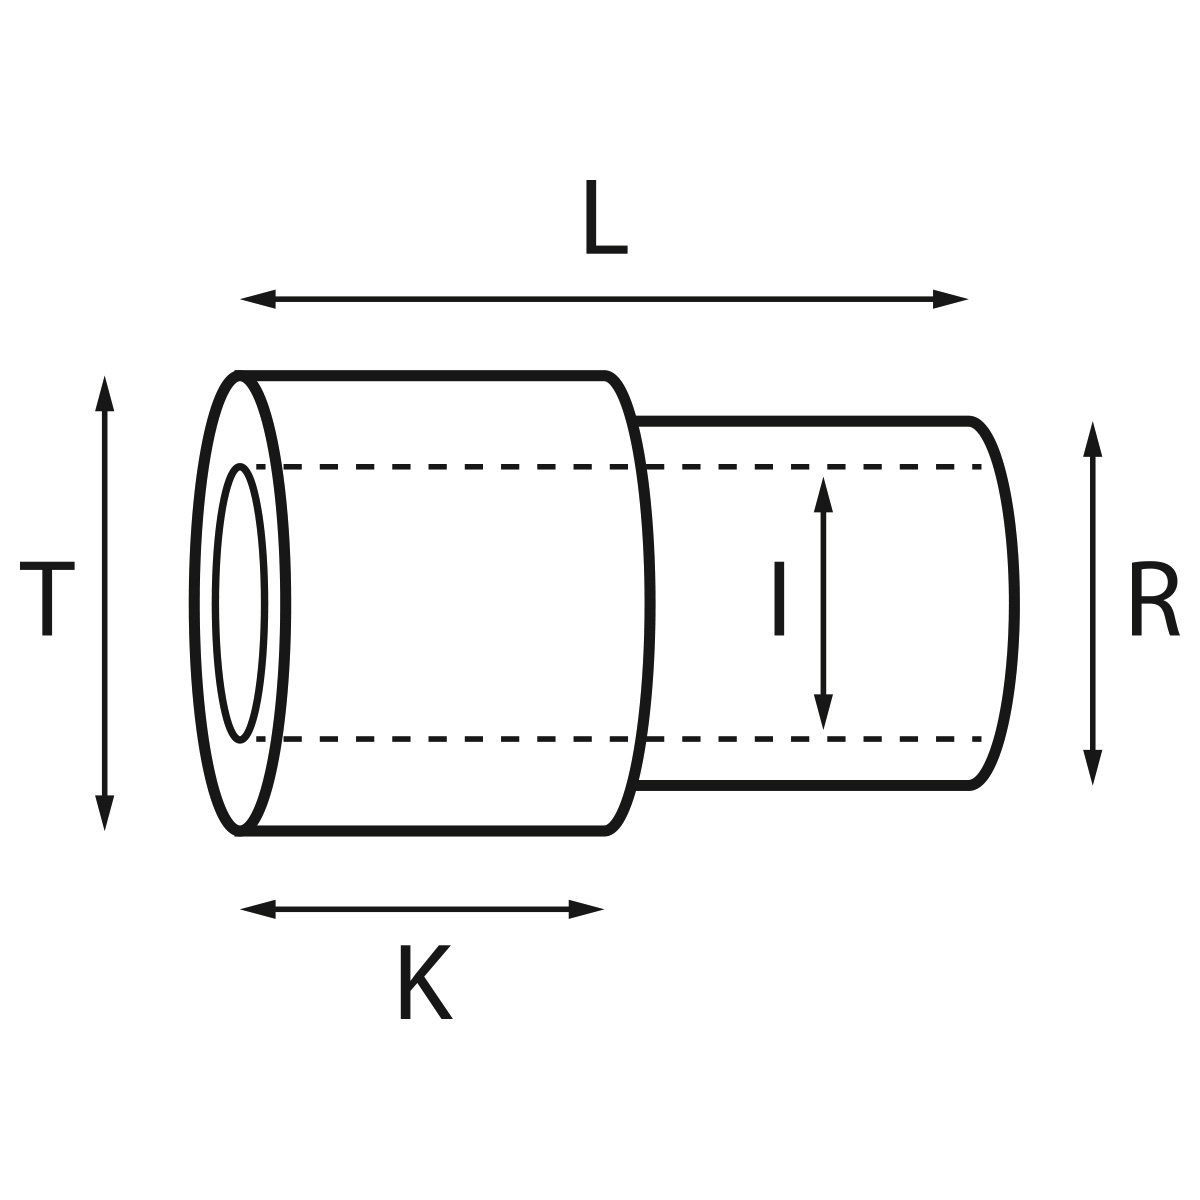 Gehäusetube Typ AS 13826, Tubus Ø 2 mm, Gesamtlänge 3,8 mm, für wasserdichte Kronen